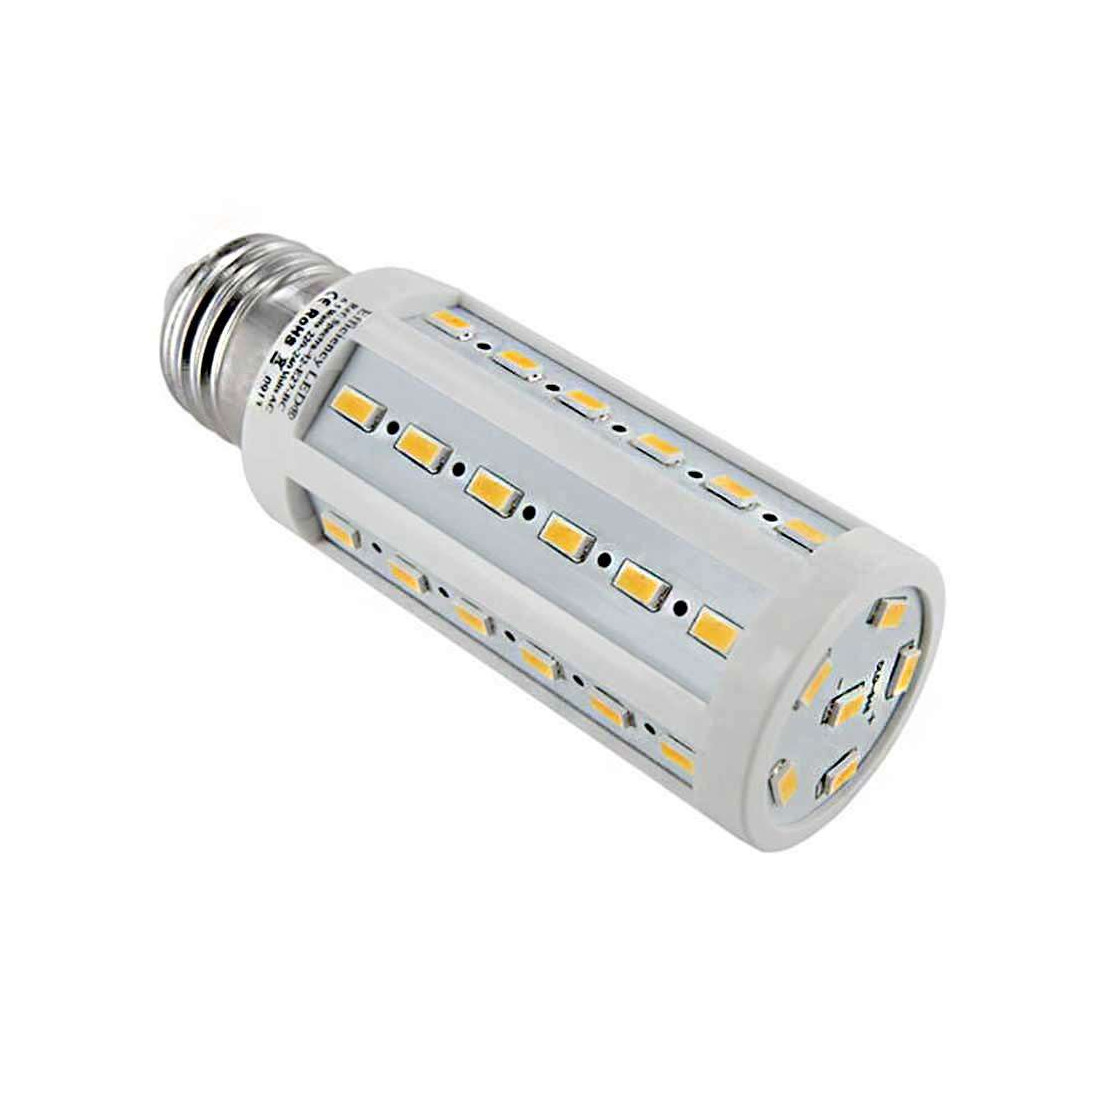 Ehmann 4295x0700 Variateur rotatif Adapté pour ampoule: Lampe LED, Ampoule  électrique, Lampe halogène blanc (RAL 9016) - Conrad Electronic France